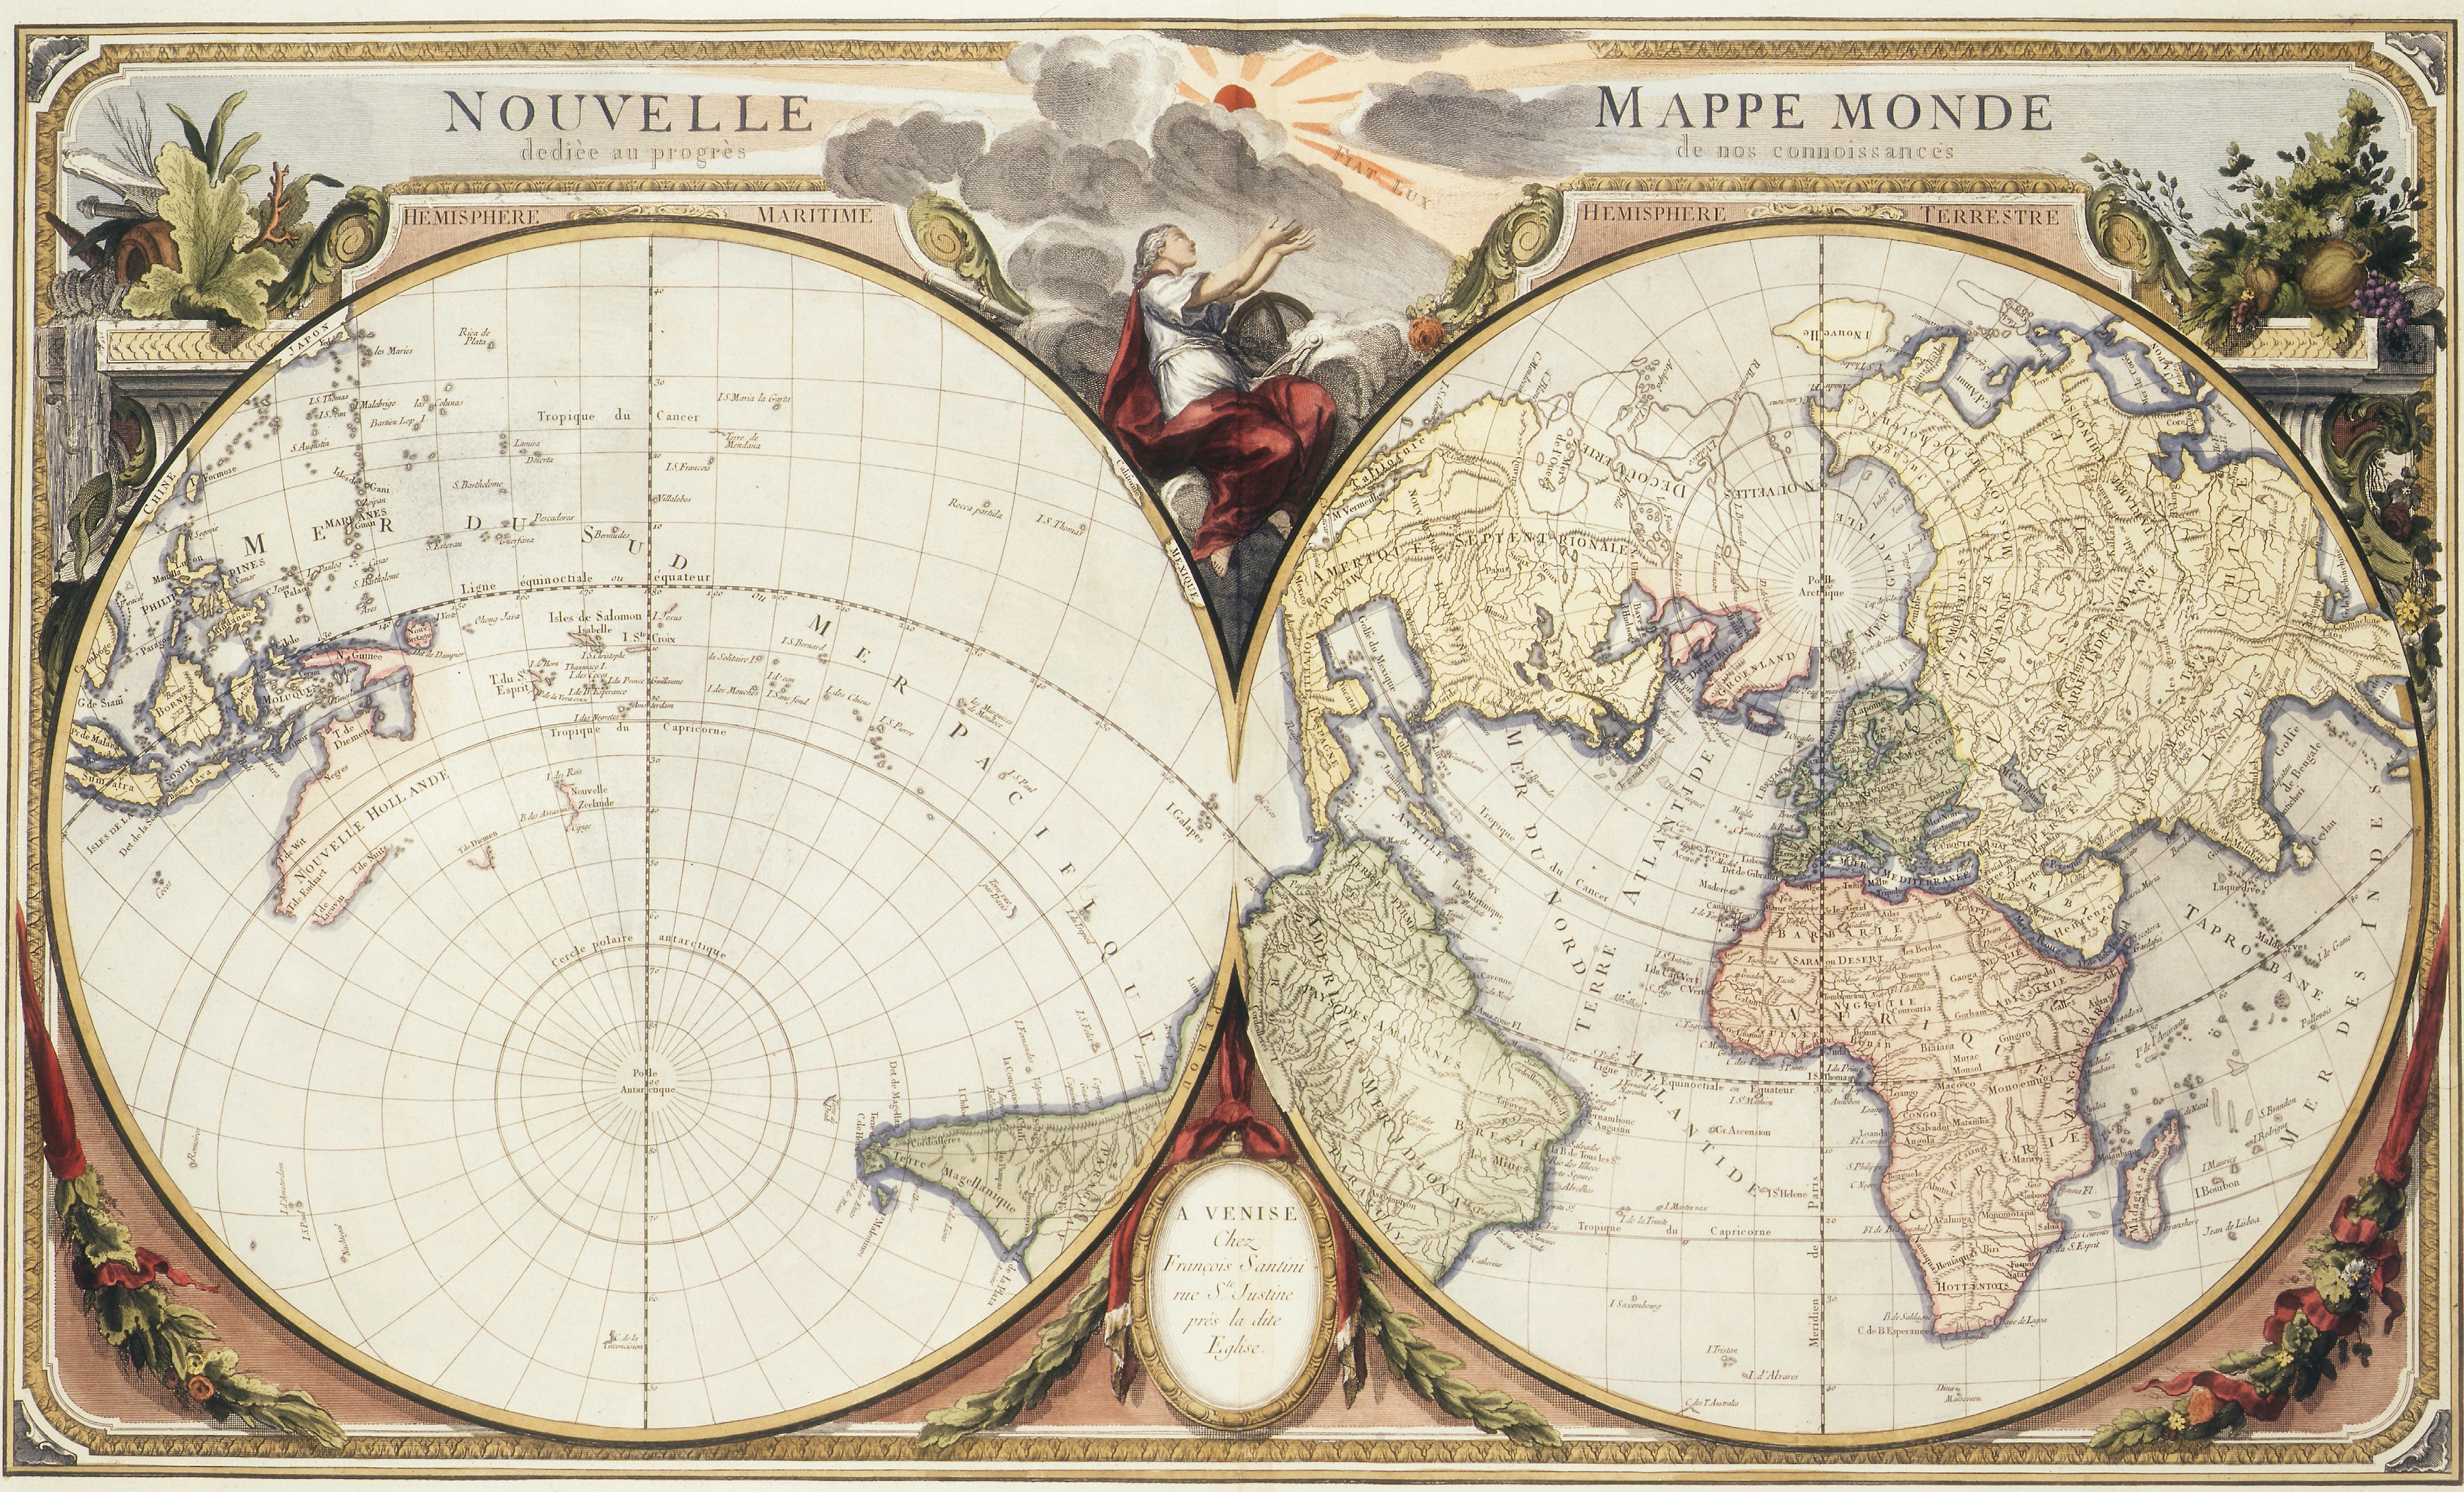 Nouvelle Mappe Monde dediee au progres de nos connoissances